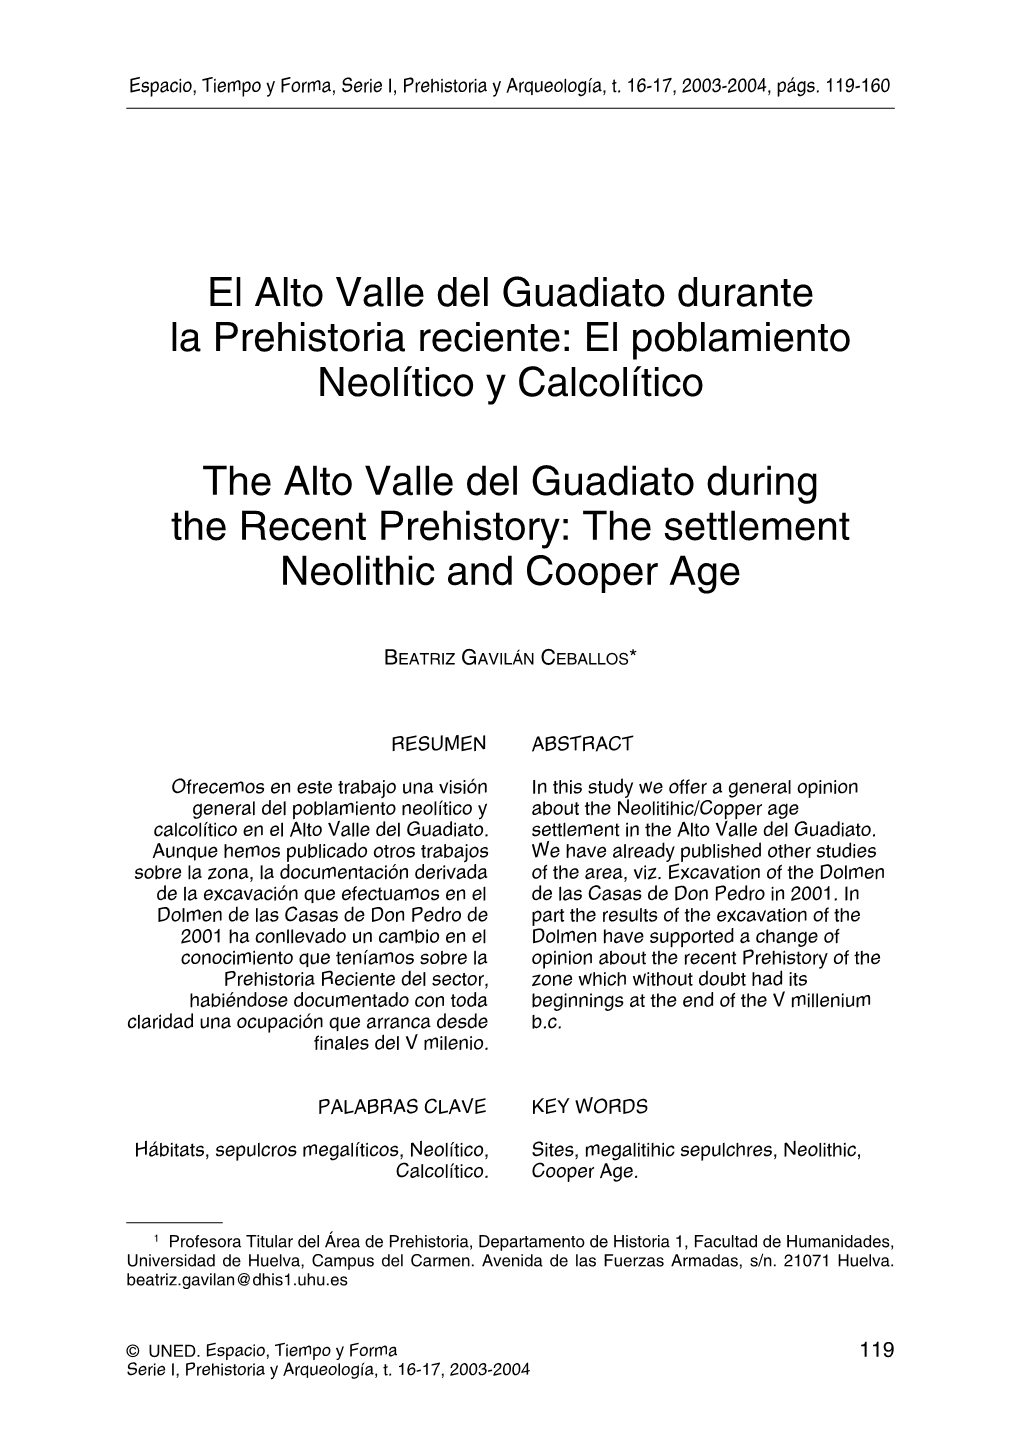 El Poblamiento Neolítico Y Calcolítico the Alto Valle Del Guadiato